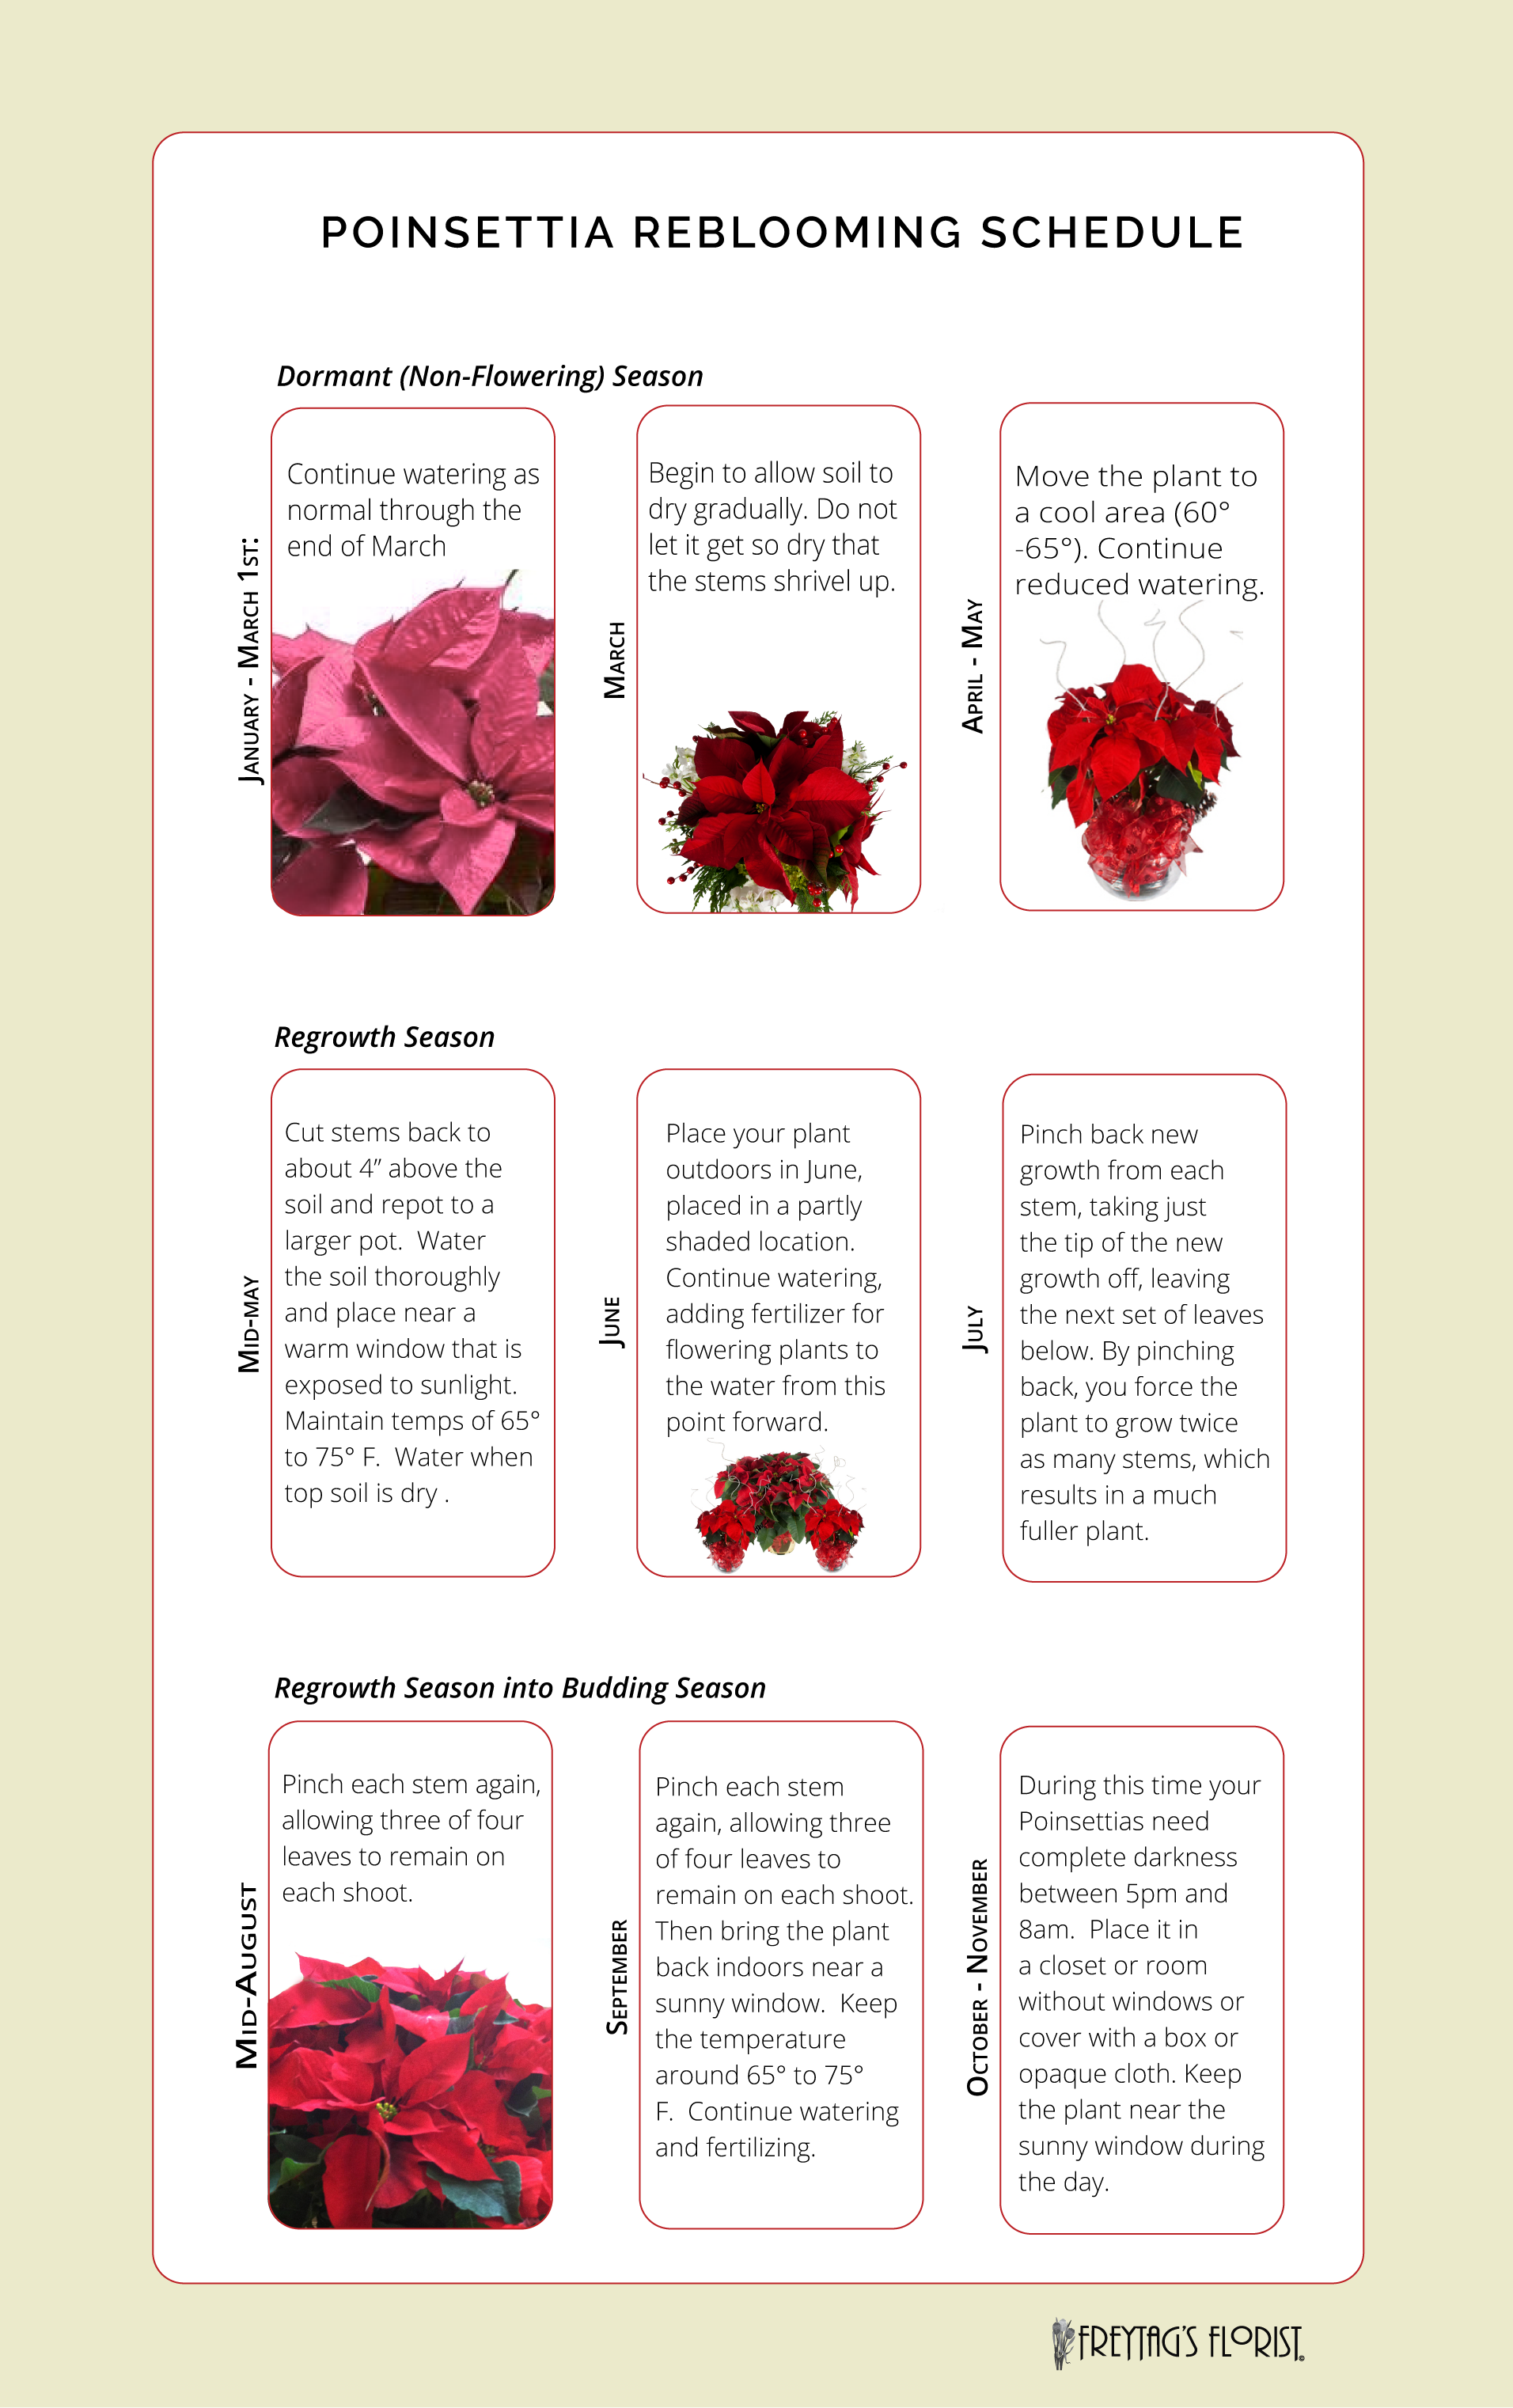 Poinsettia-care-tips-freytags-florist